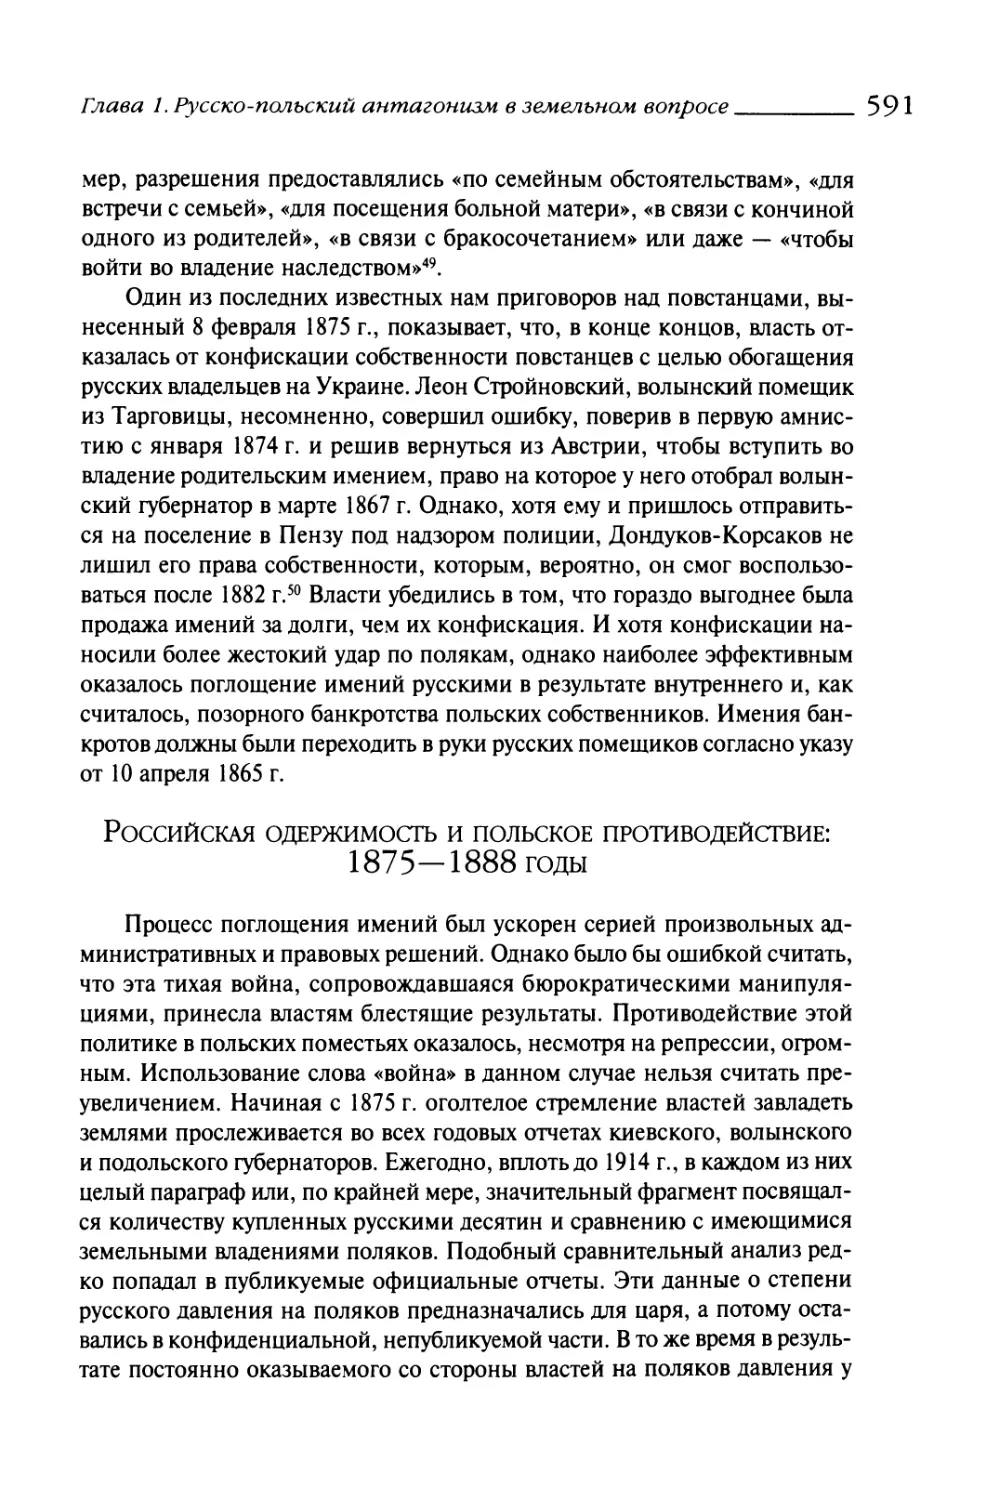 Русская одержимость и польское противодействие: 1875—1888 годы